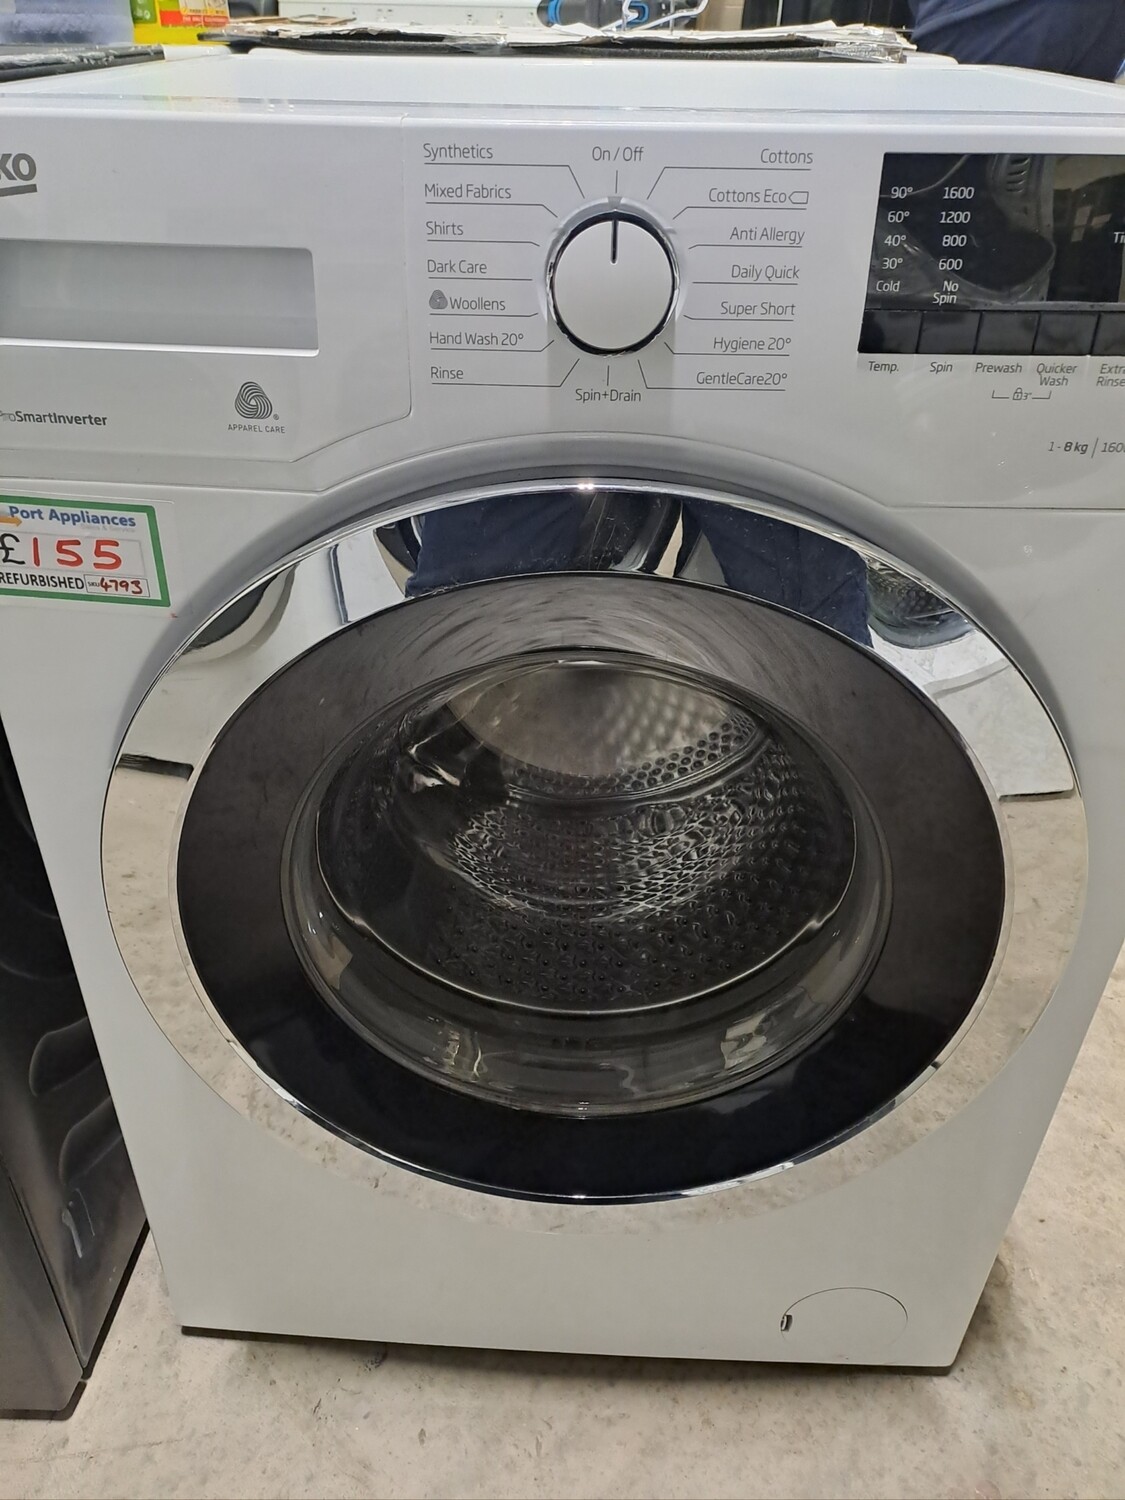 Beko WR862441W 8kg Load 1600 Spin Washing Machine - White - Refurbished - 6 Month Guarantee